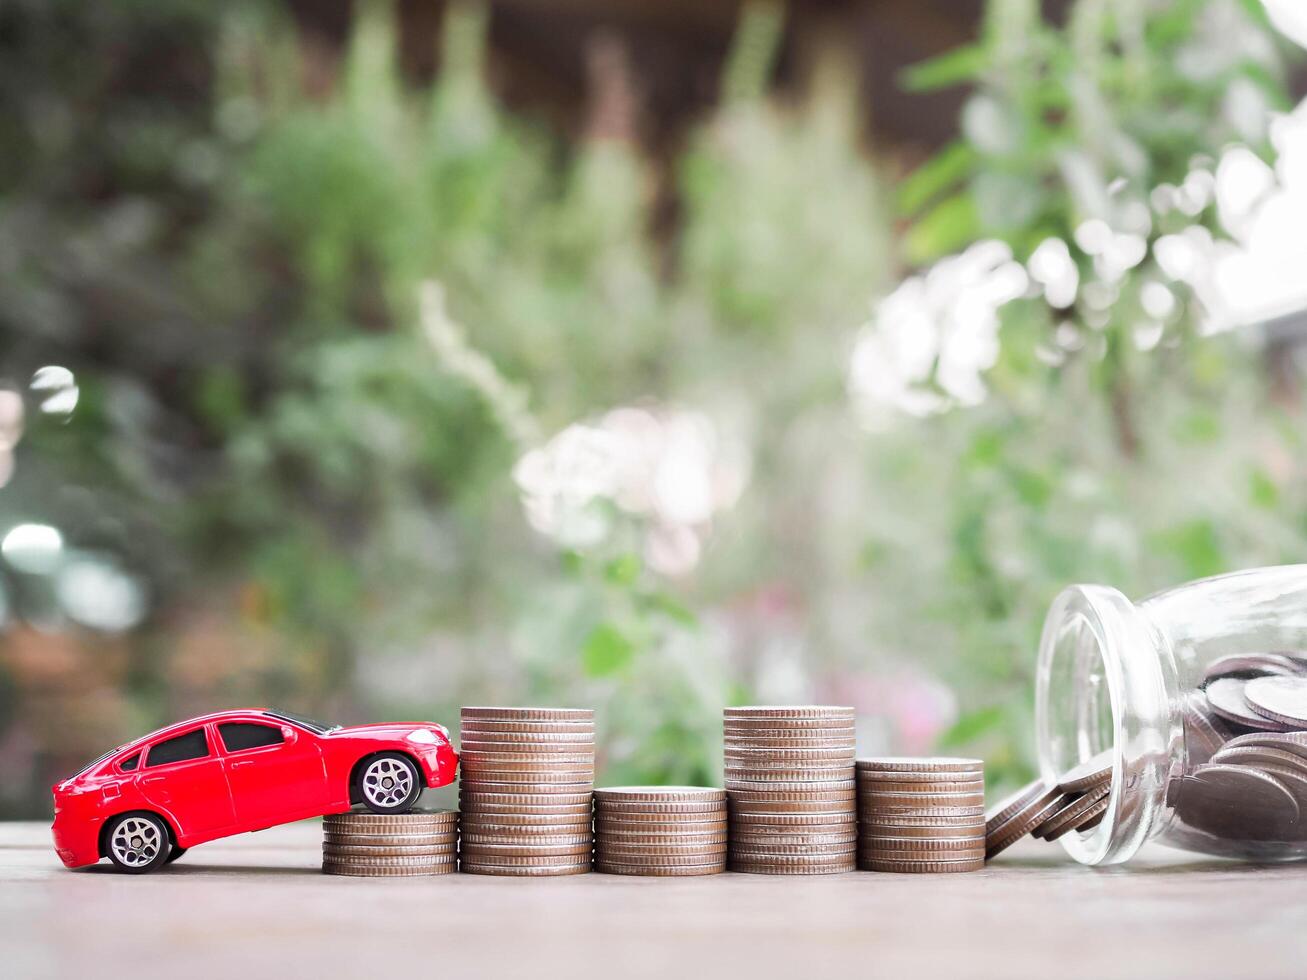 juguete carros en apilar de monedas el concepto de ahorro dinero y gestionar a éxito transporte negocio foto